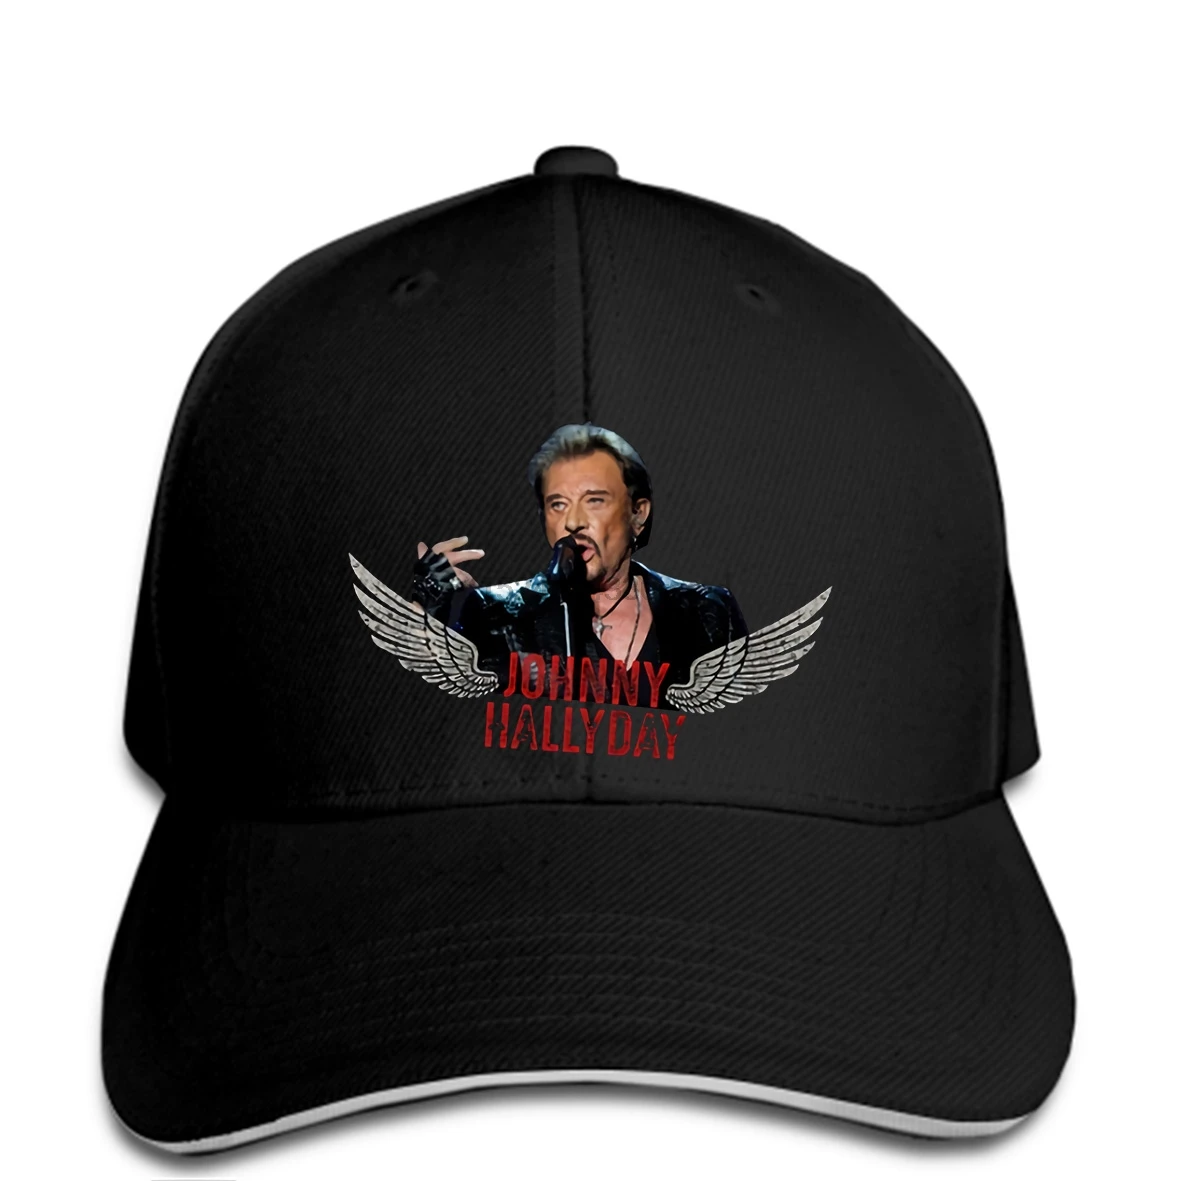 Хип-хоп бейсболки, забавная мужская шапка, кепка, Черная кепка с изображением Джони Халлидей, рок-н-ролл